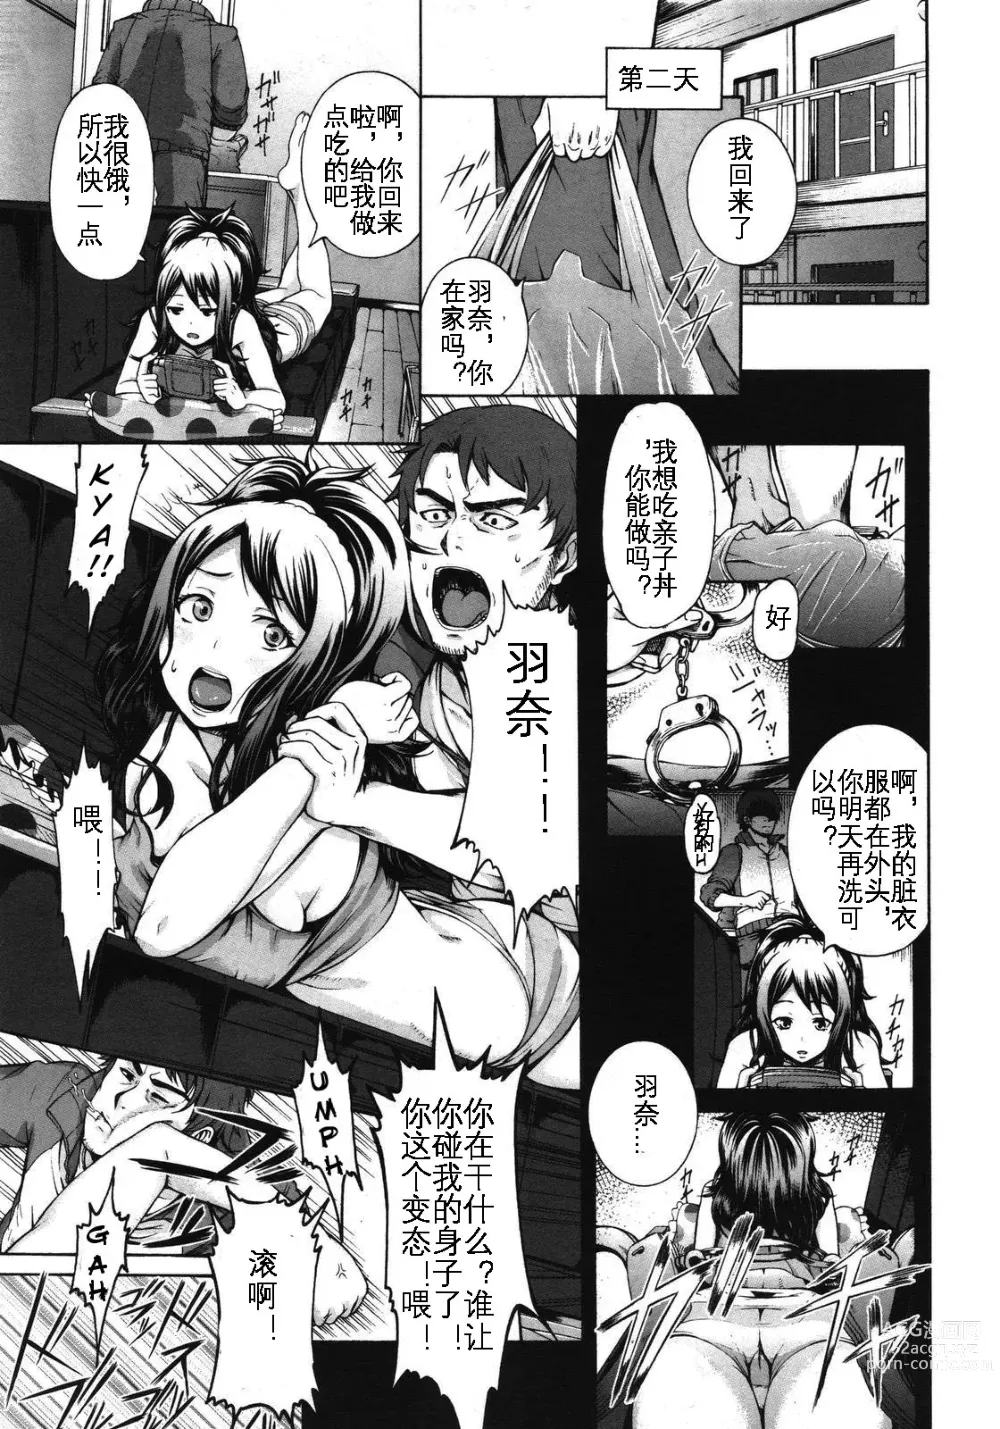 Page 6 of manga Konna Ani no Imouto Dakara   Animoca